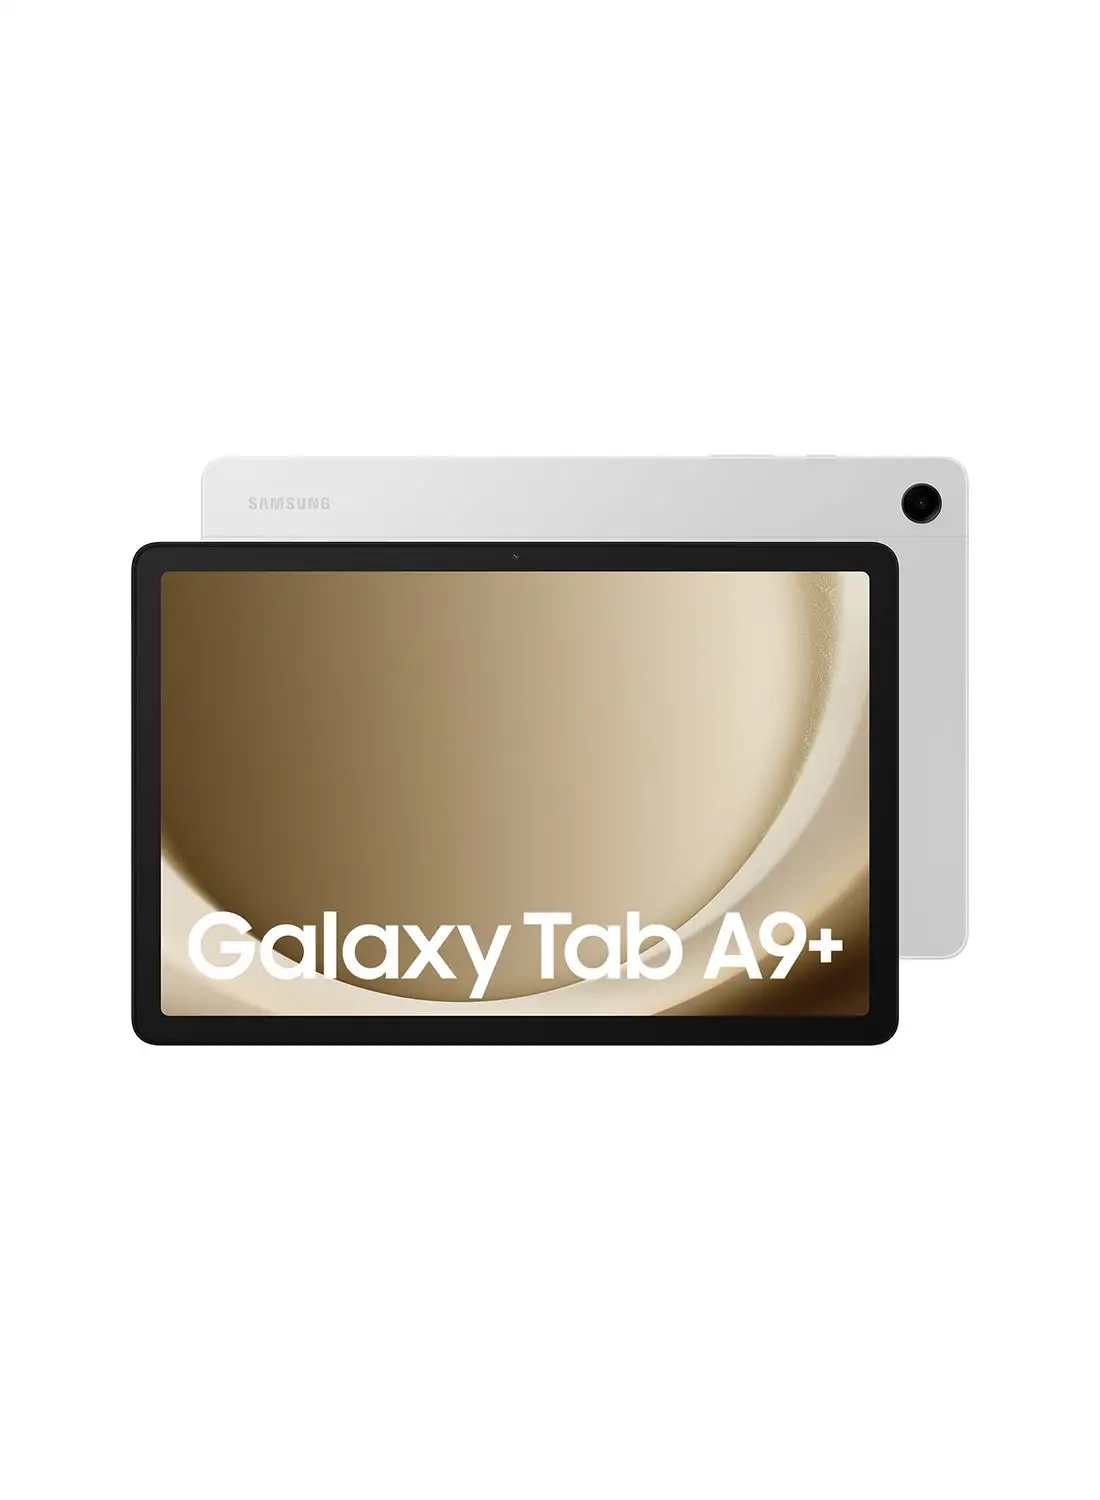 Samsung Galaxy Tab A9 Plus Silver 4GB RAM 64GB 5G - Middle East Version